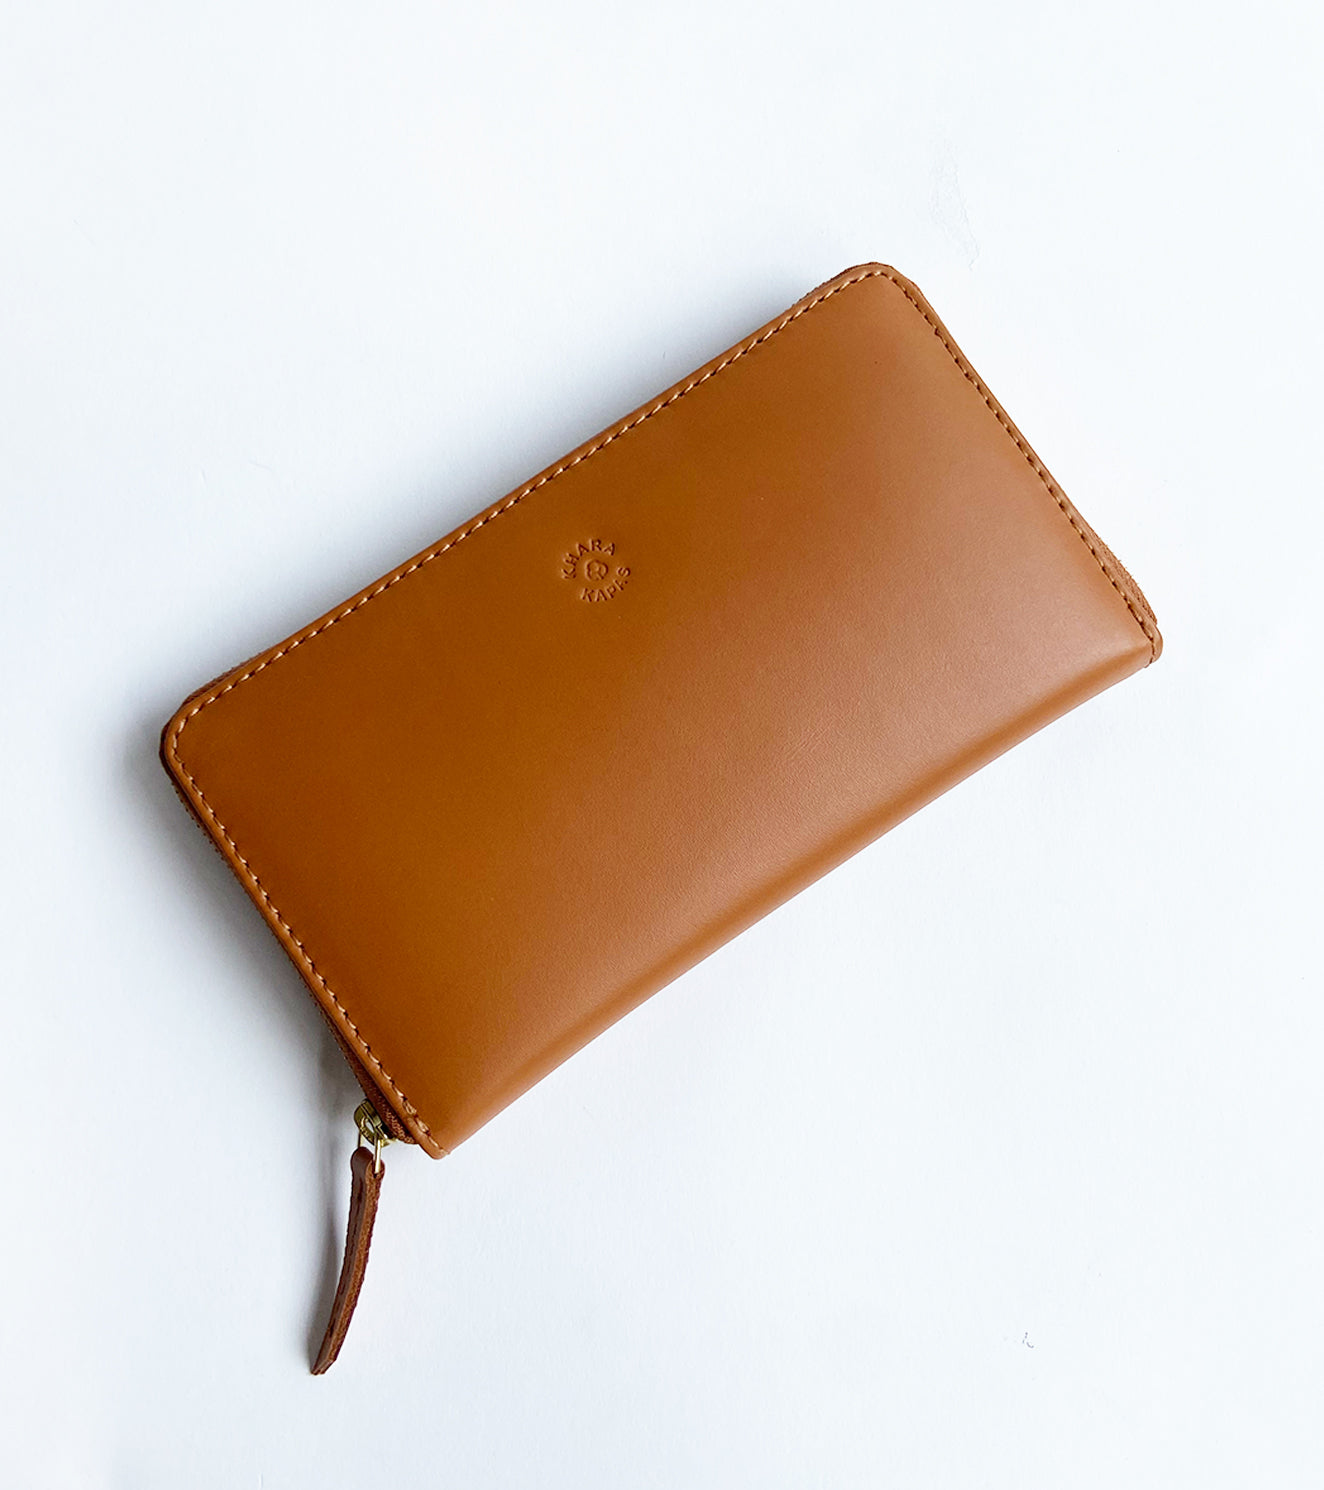 Tan chestnut wallet